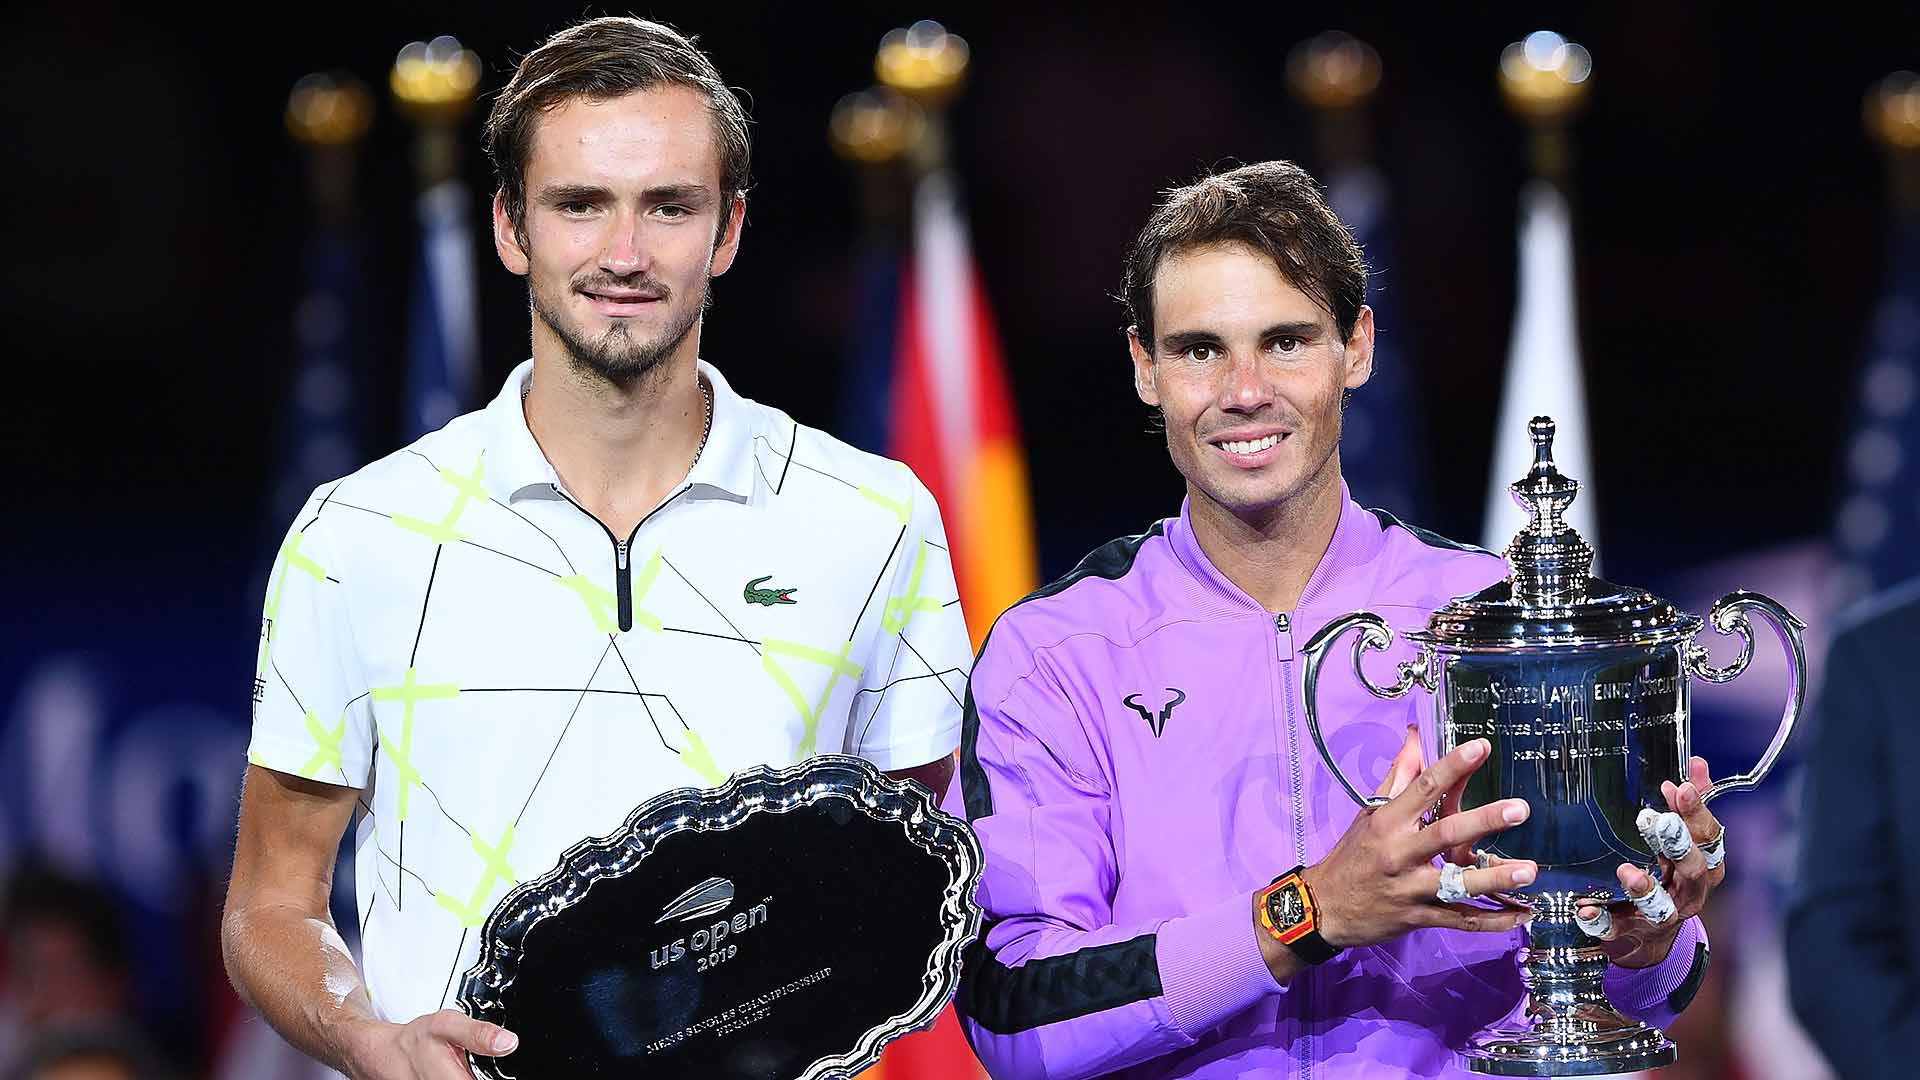 Preview Will Nadal Win 21st Slam Or Medvedev Play Australian Open Spoiler? ATP Tour Tennis